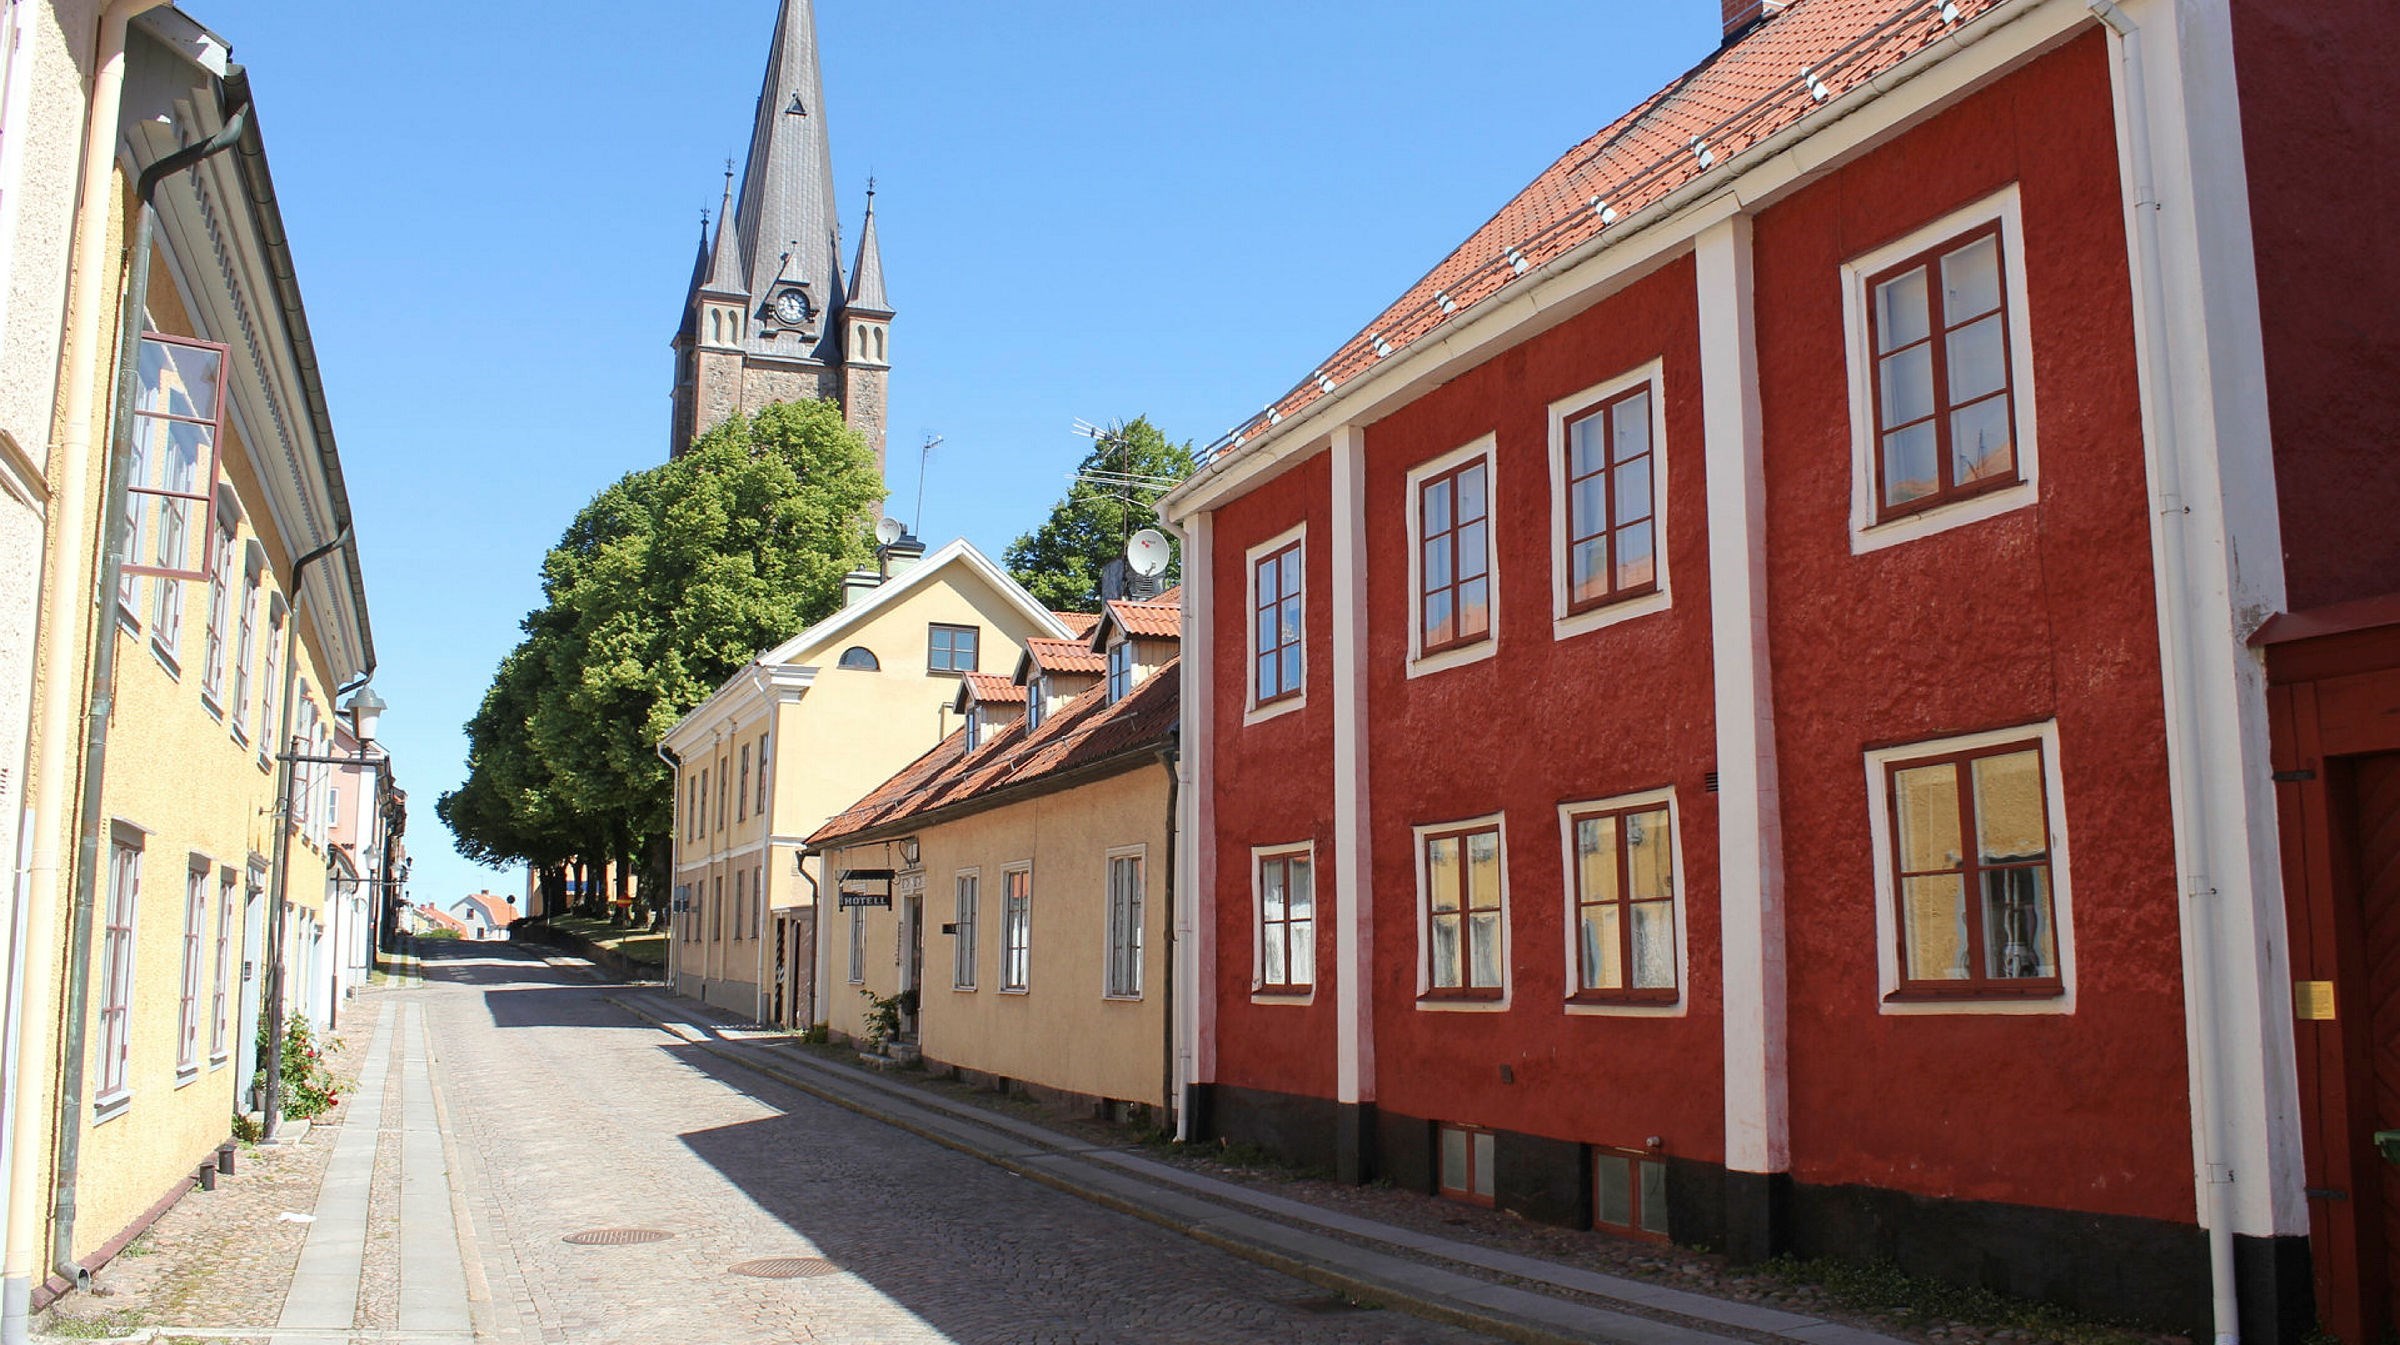 En stadsgata med framför allt gula hus men ett rött med vitmålade knutar ligger kvar